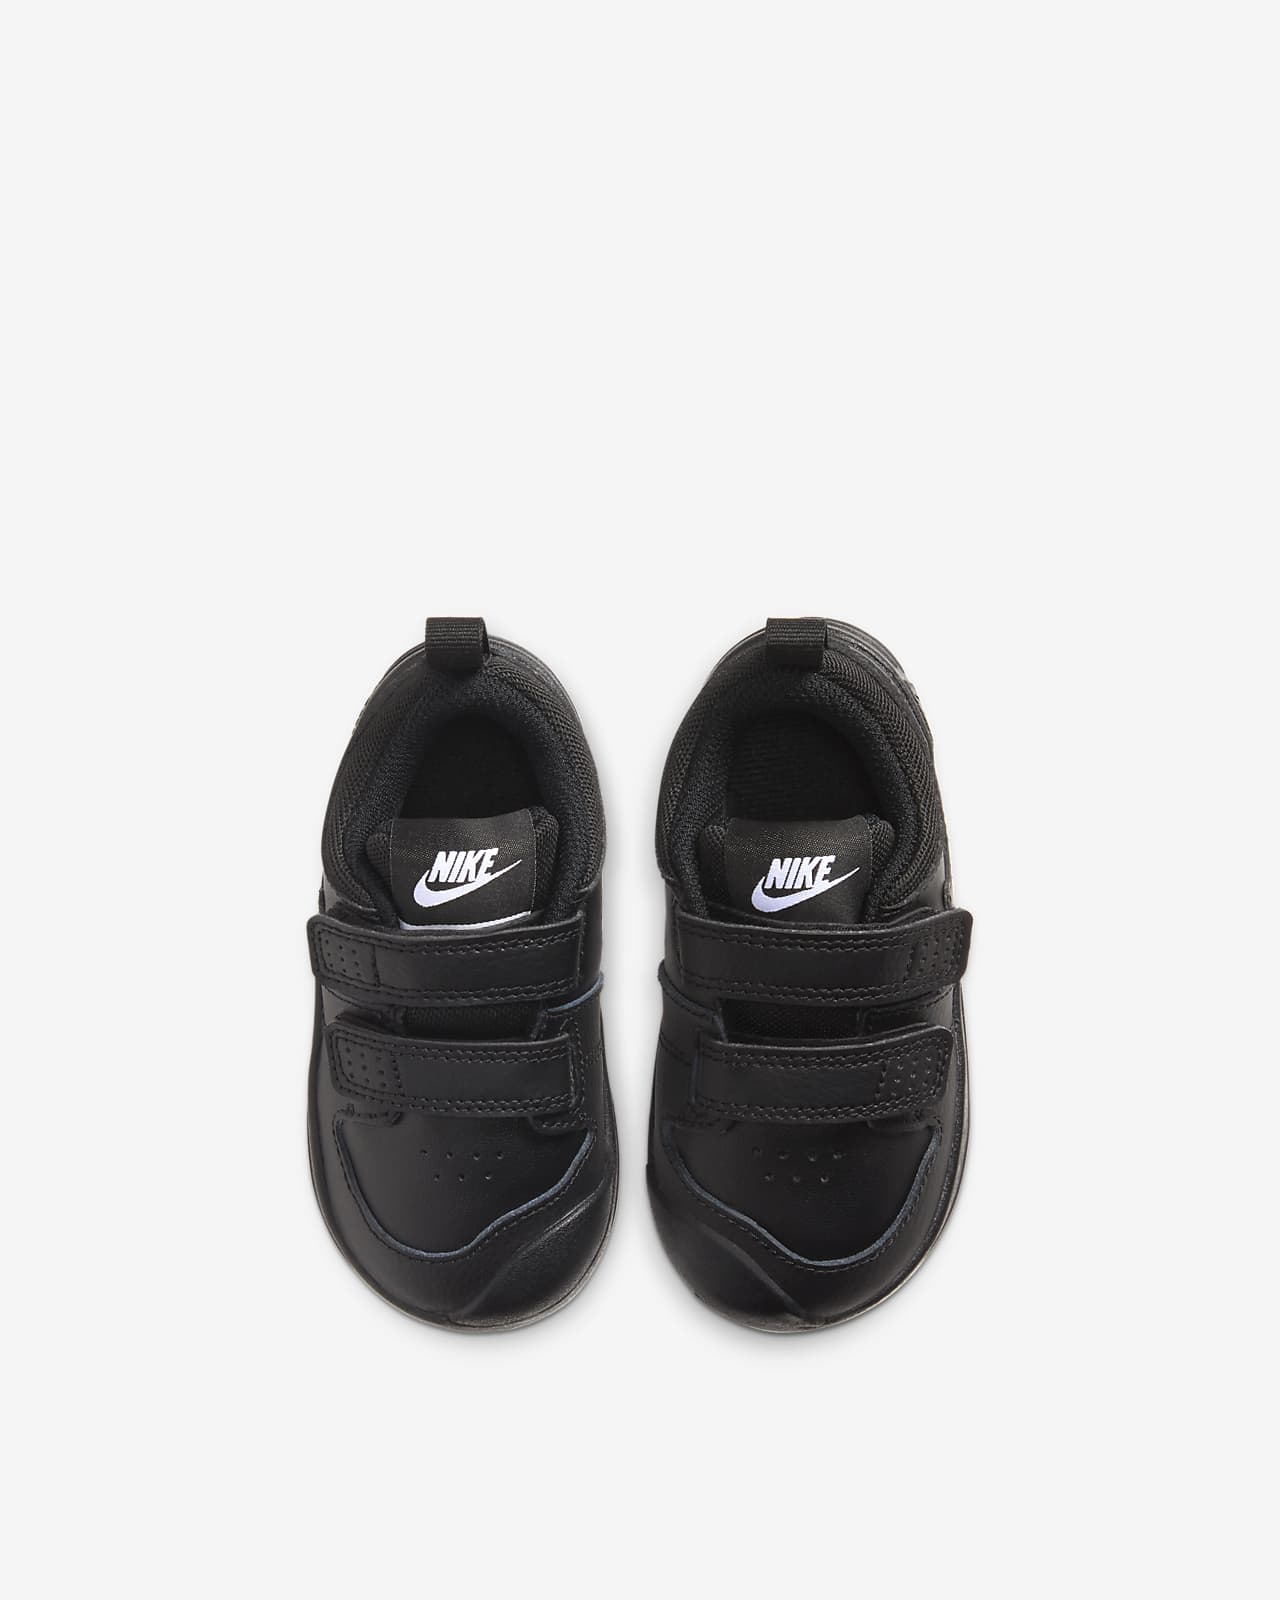 Nike Pico 5 Baby \u0026 Toddler Shoes. Nike IN